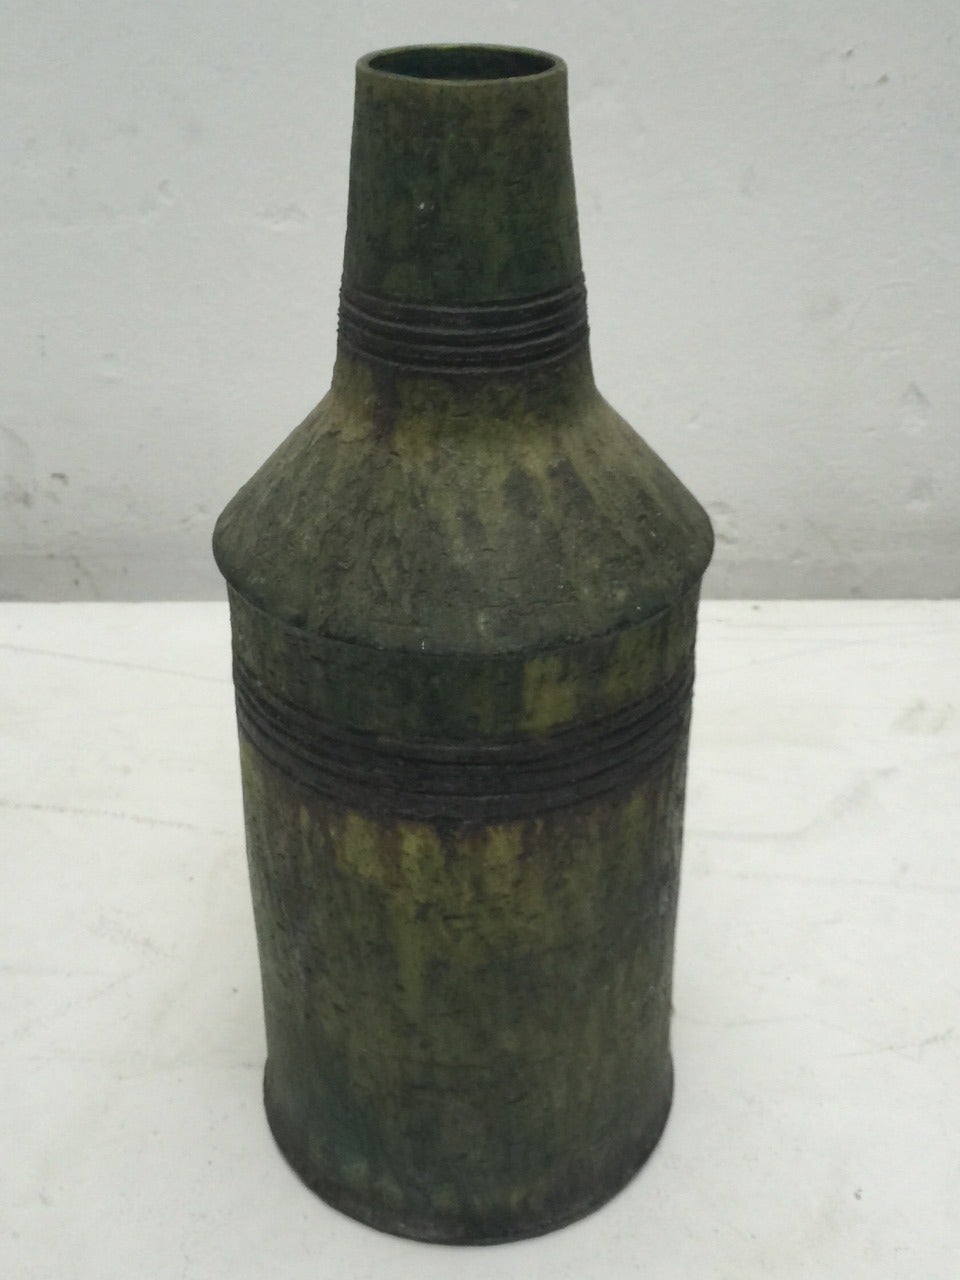 Glazed Large 1952 Studio Vase by Marcello Fantoni, Rare Model Seen in Fantoni's Studio